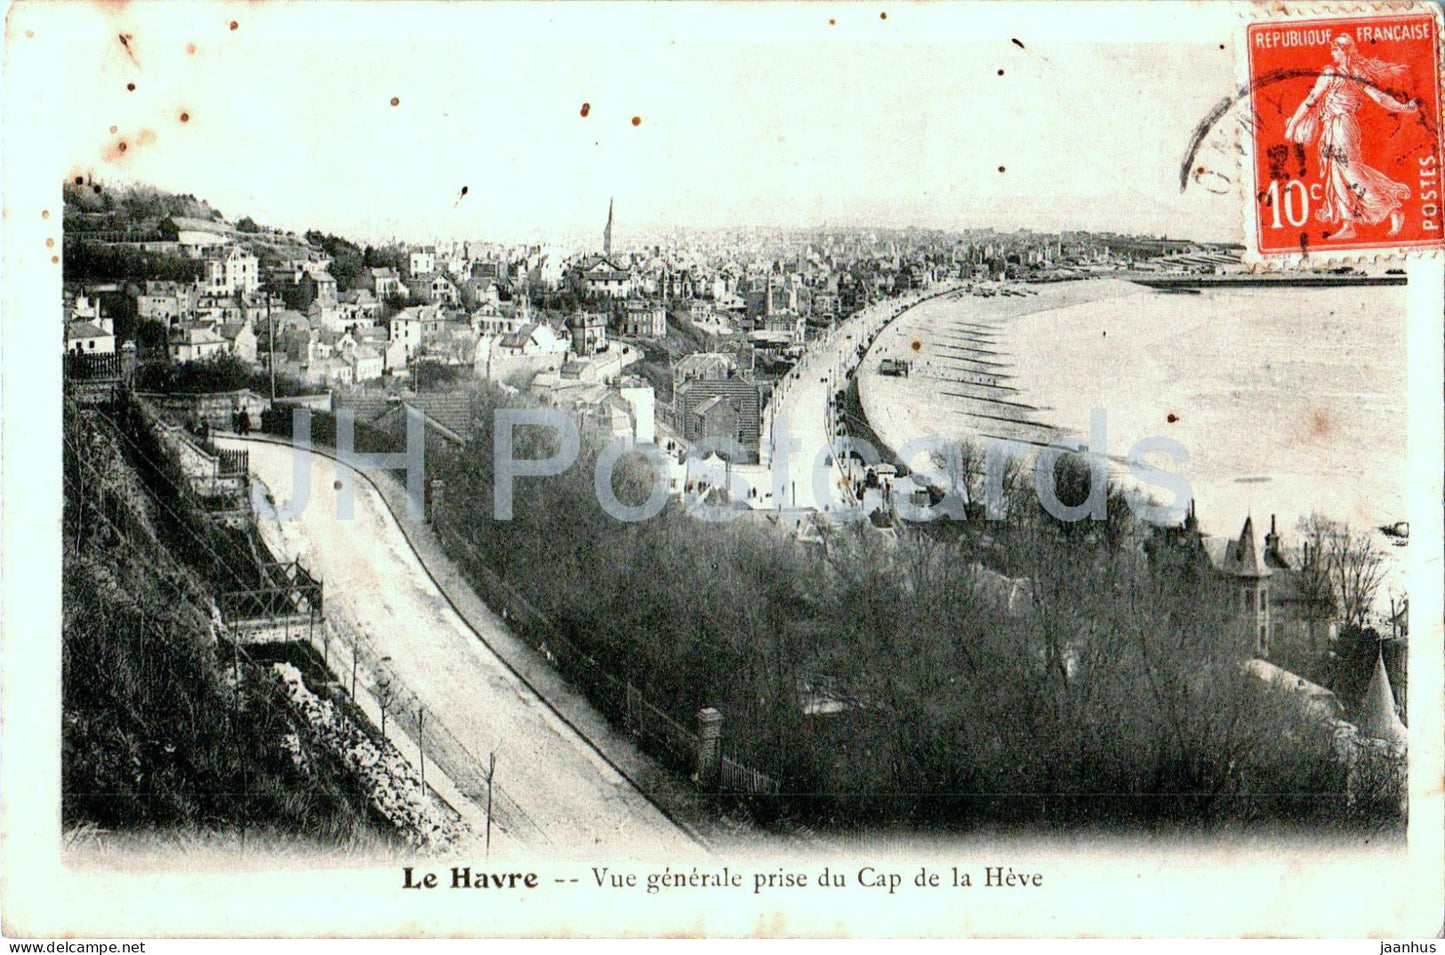 Le Havre - Vue generale prise du Cap de la Heve - old postcard - France - used - JH Postcards